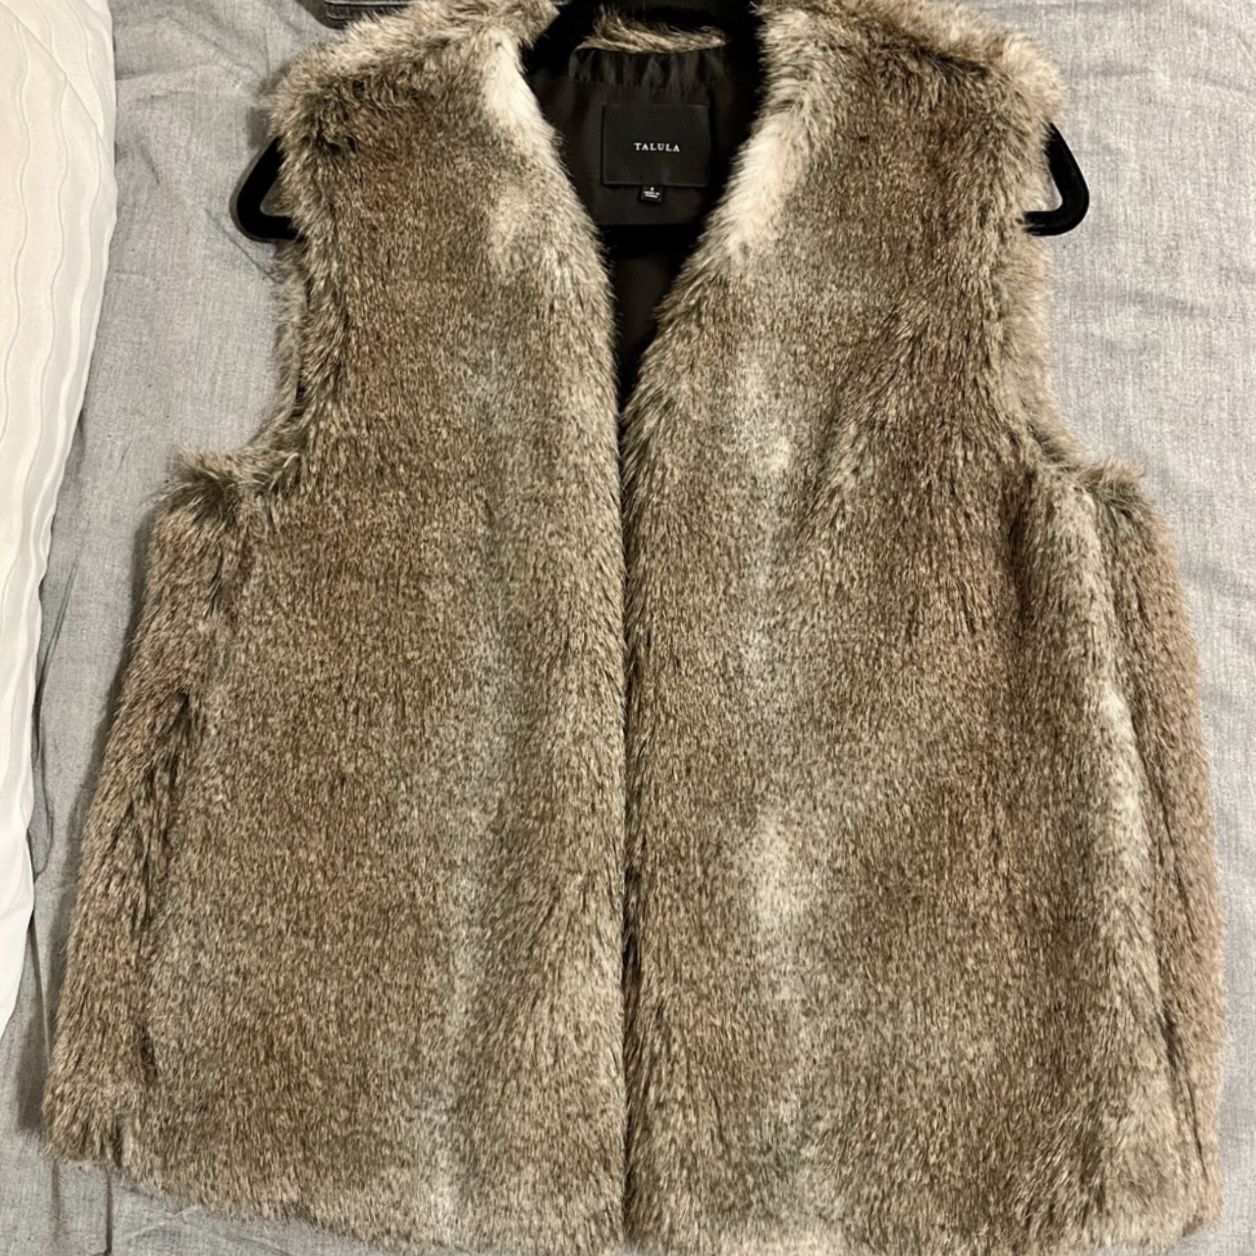 Aritzia/Talula Women’s Faux Fur Vest